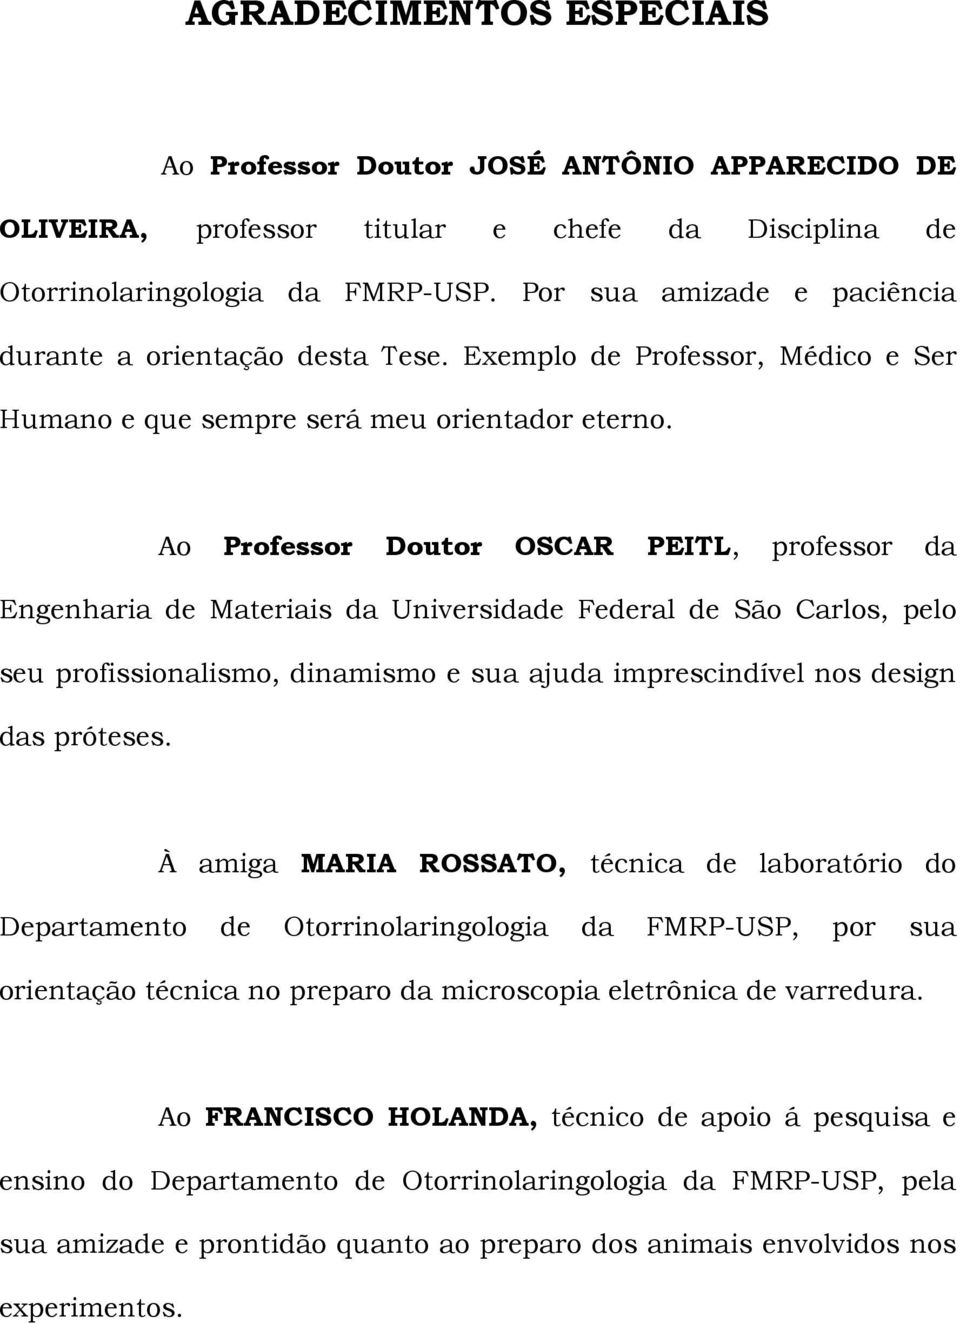 Ao Professor Doutor OSCAR PEITL, professor da Engenharia de Materiais da Universidade Federal de São Carlos, pelo seu profissionalismo, dinamismo e sua ajuda imprescindível nos design das próteses.